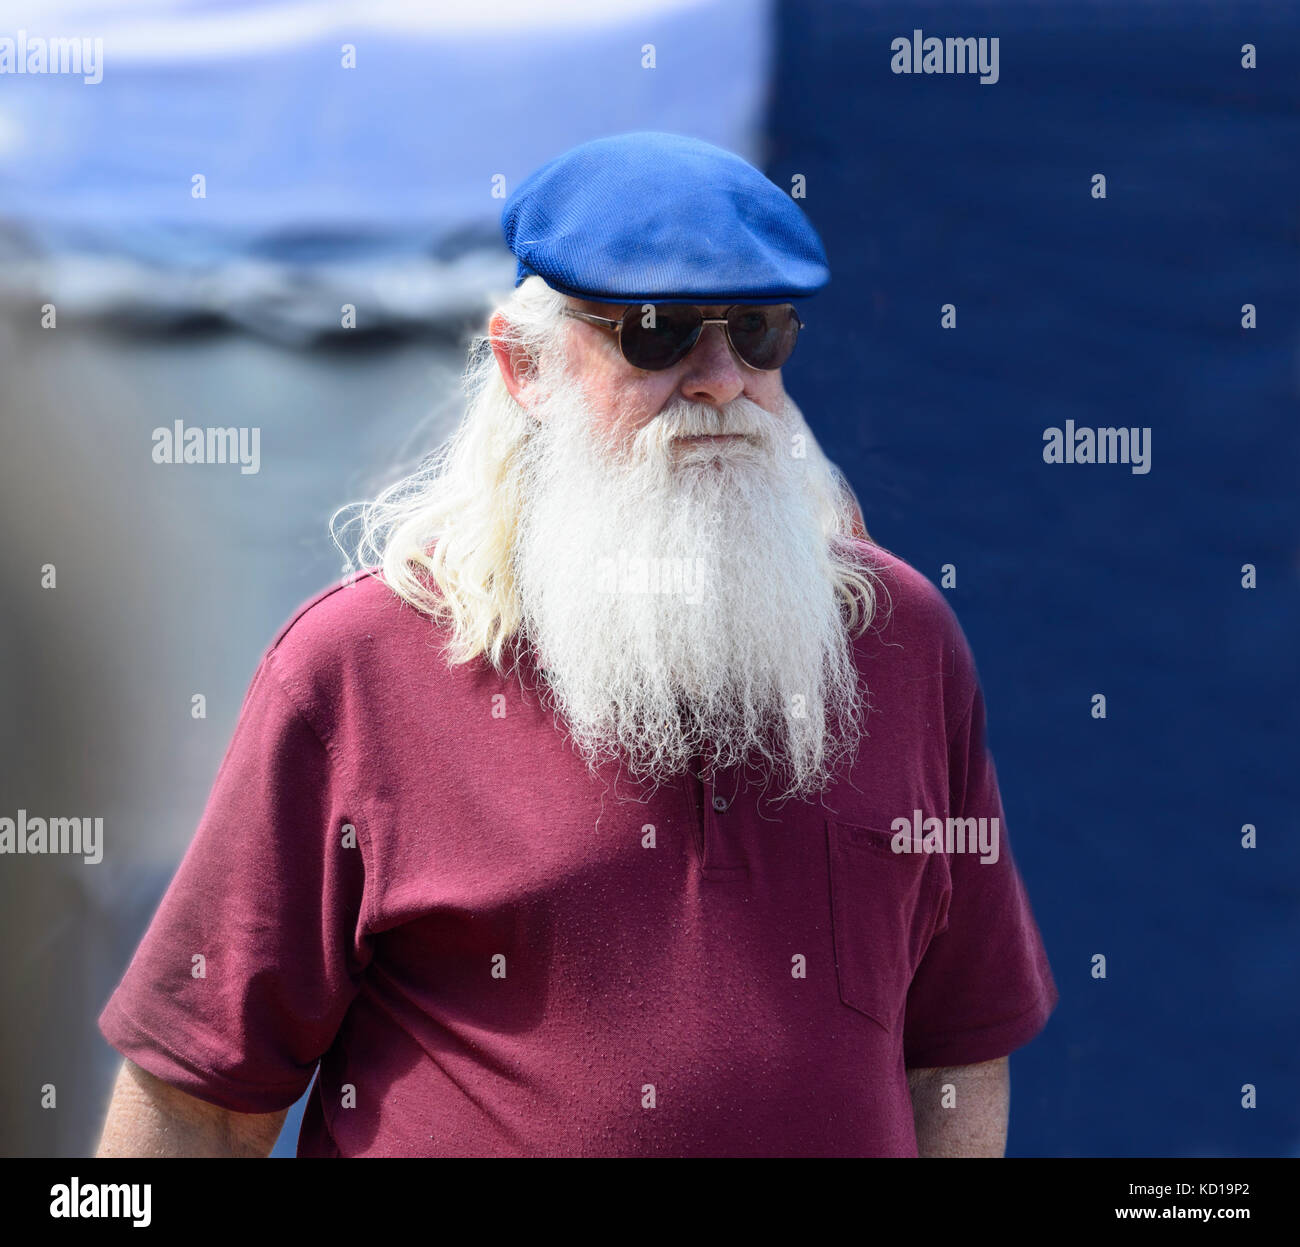 Ritratto di un uomo anziano che indossa un berretto, occhiali da sole e una lunga barba bianca Foto Stock